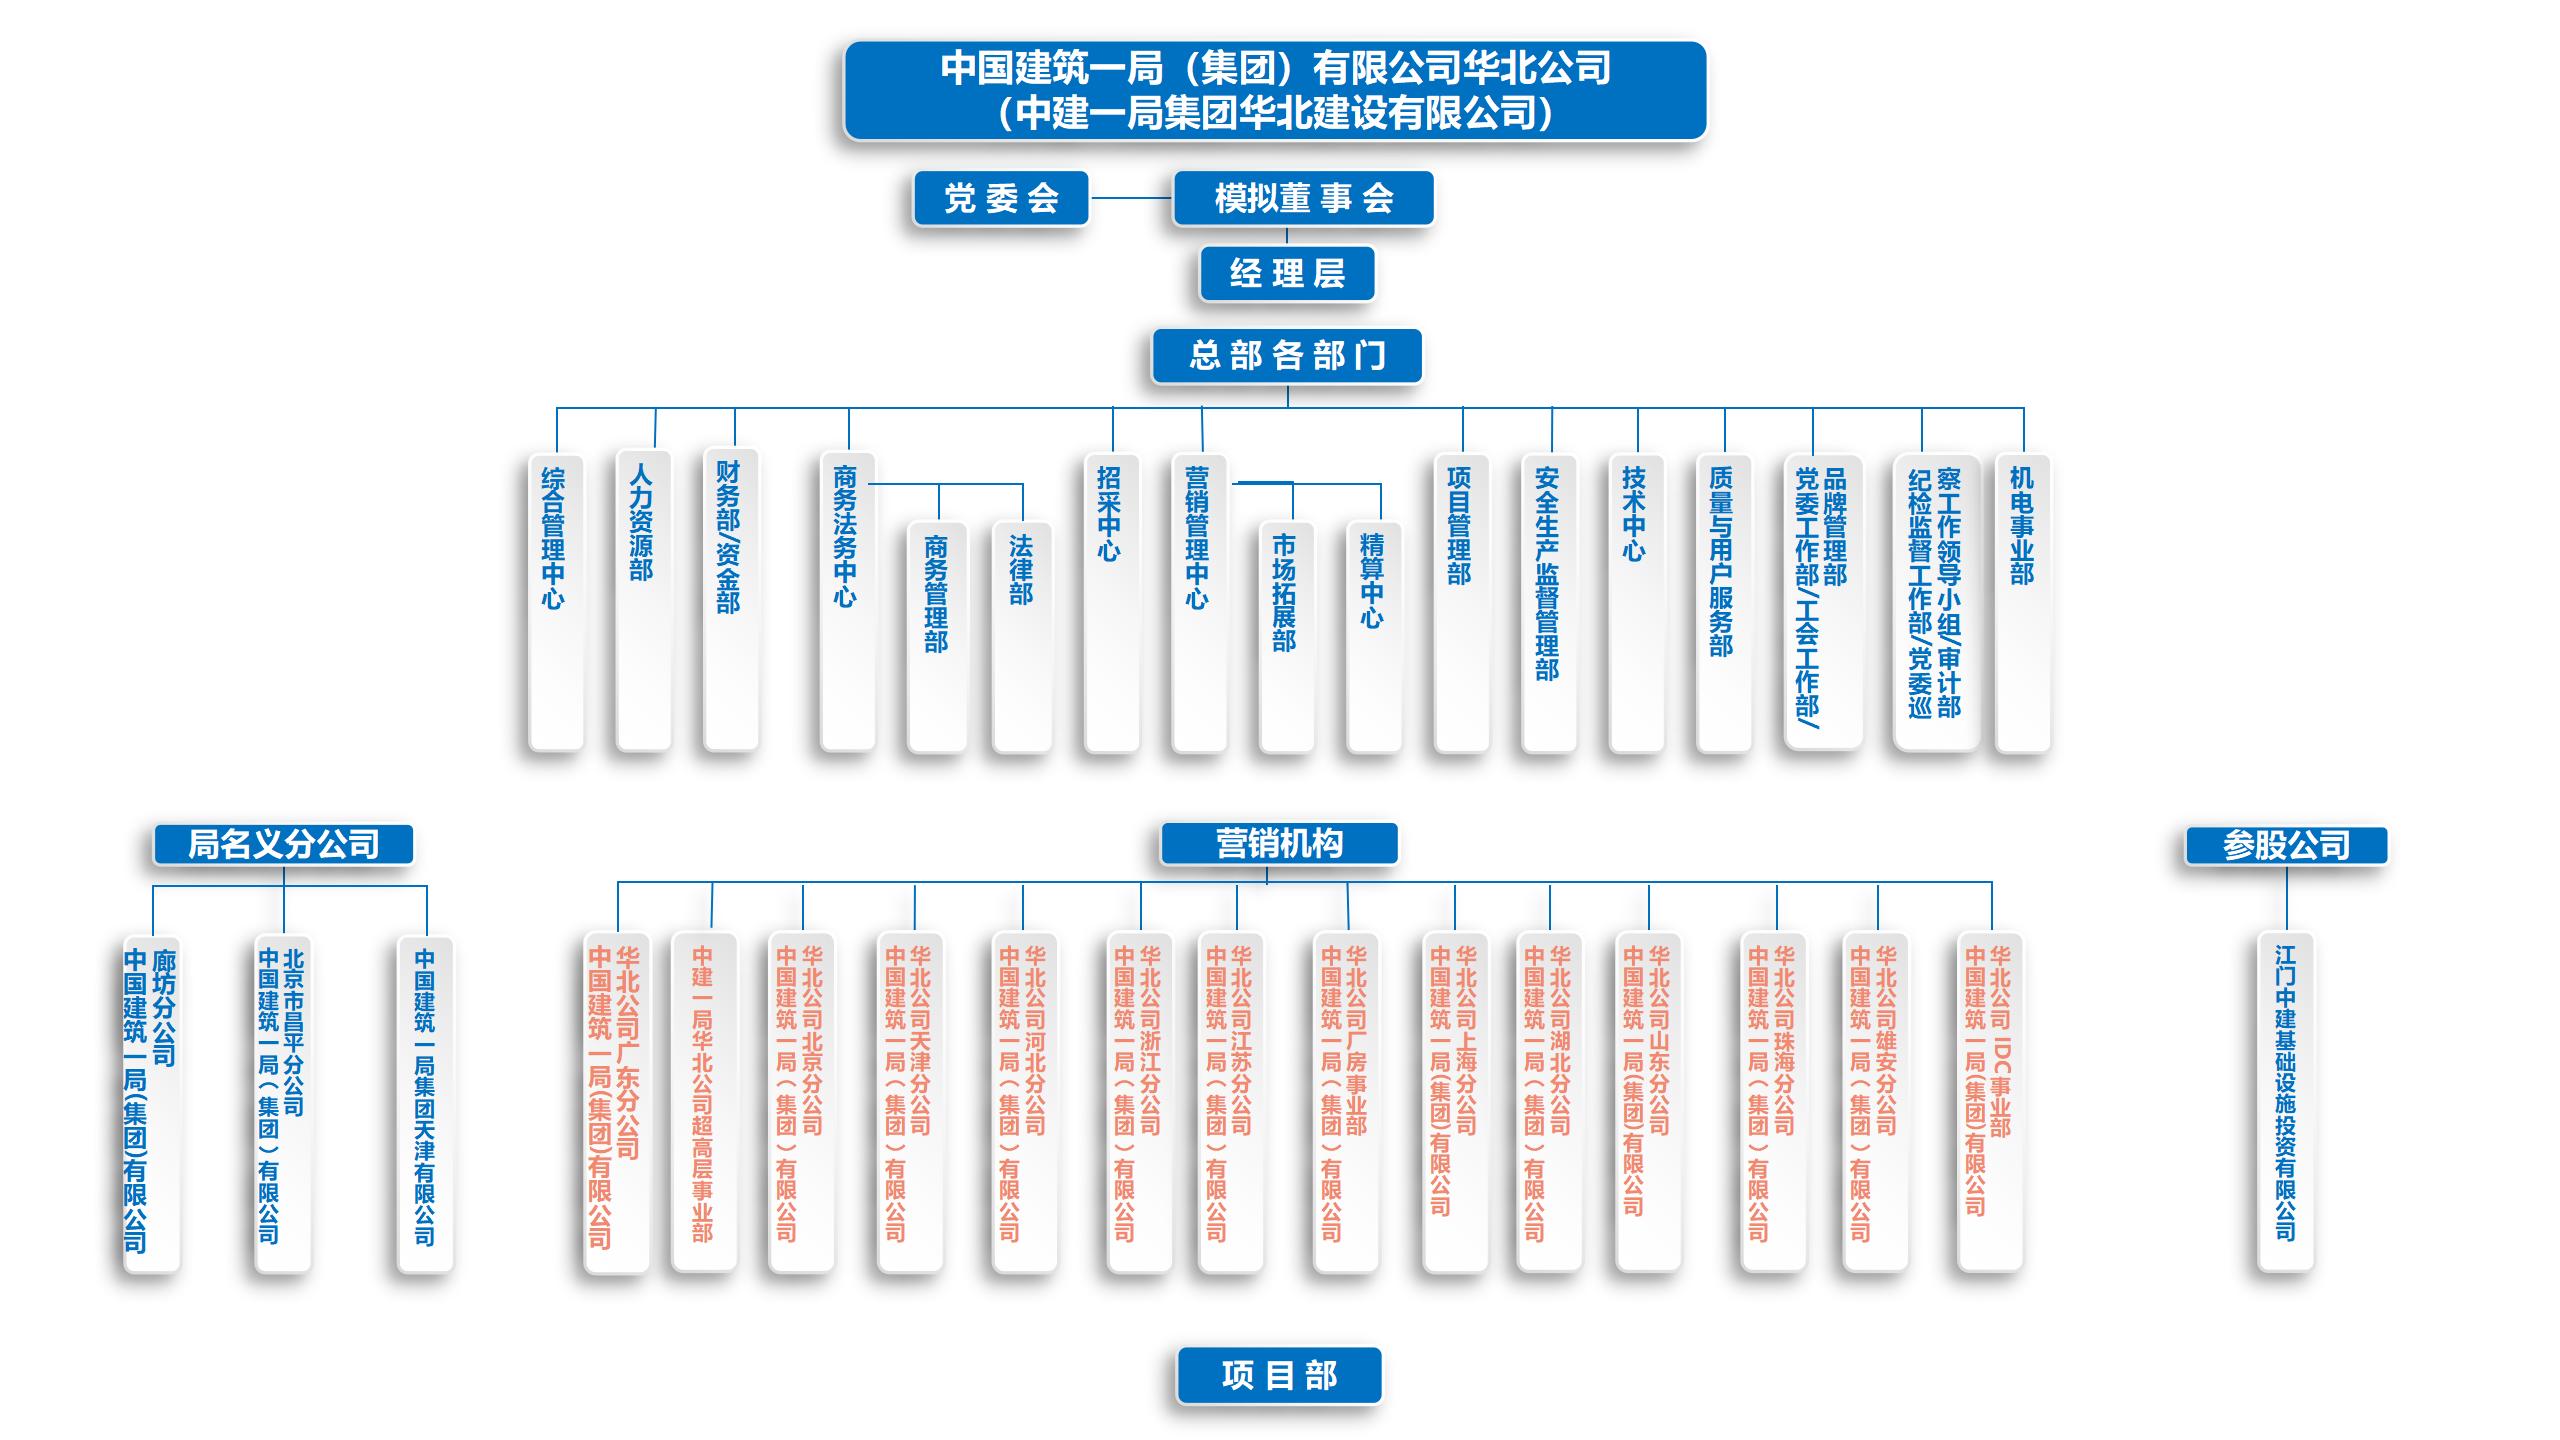 华北公司-附件1：子企业组织架构图模板完整版_01.jpg